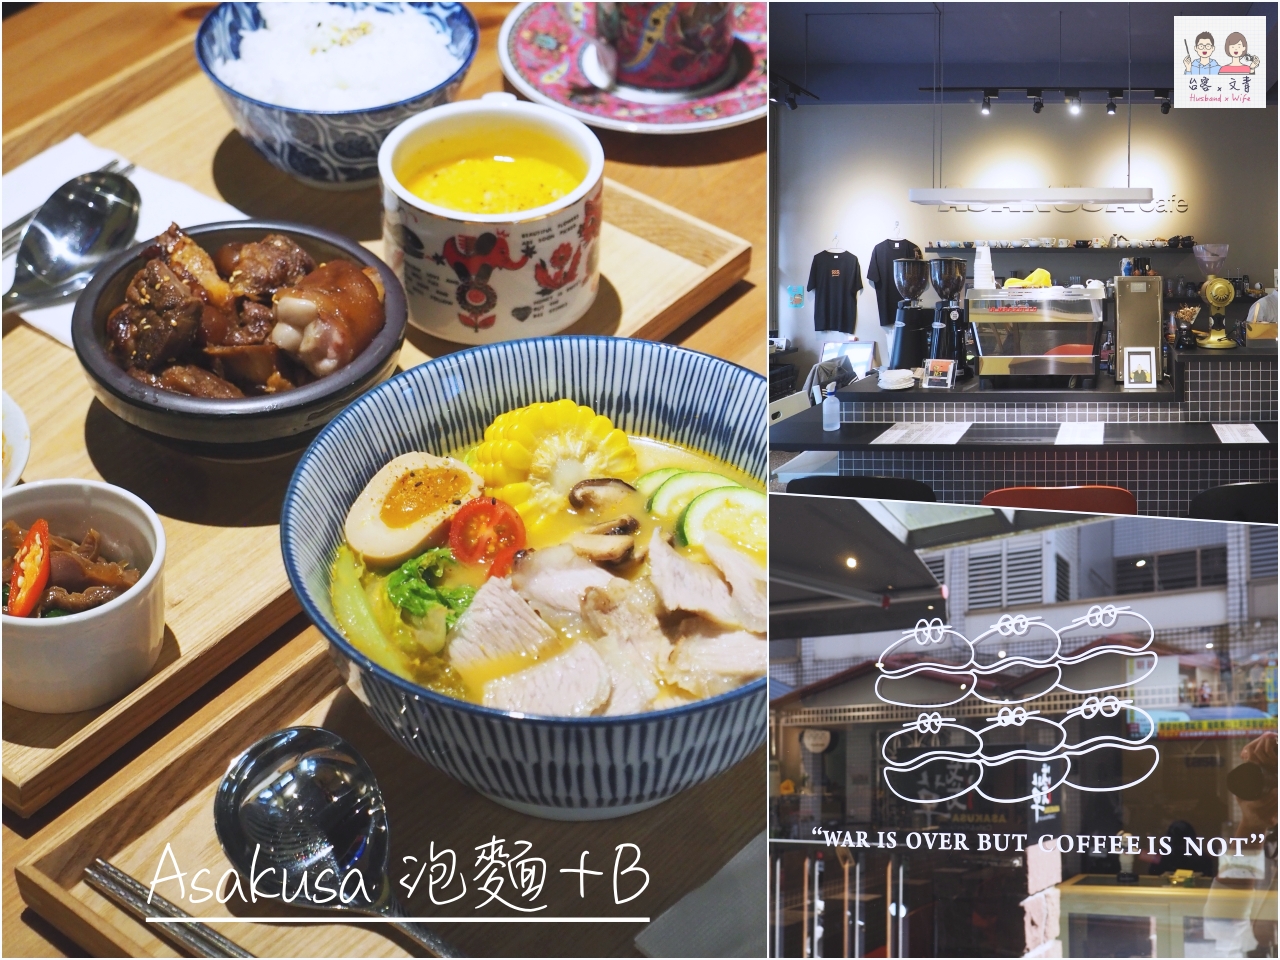 【沖繩⋈美食】店裝簡約時髦感 具有新意的沖繩麵專賣店「Okinawa Soba EIBUN」 @台客X文青的夫婦日常